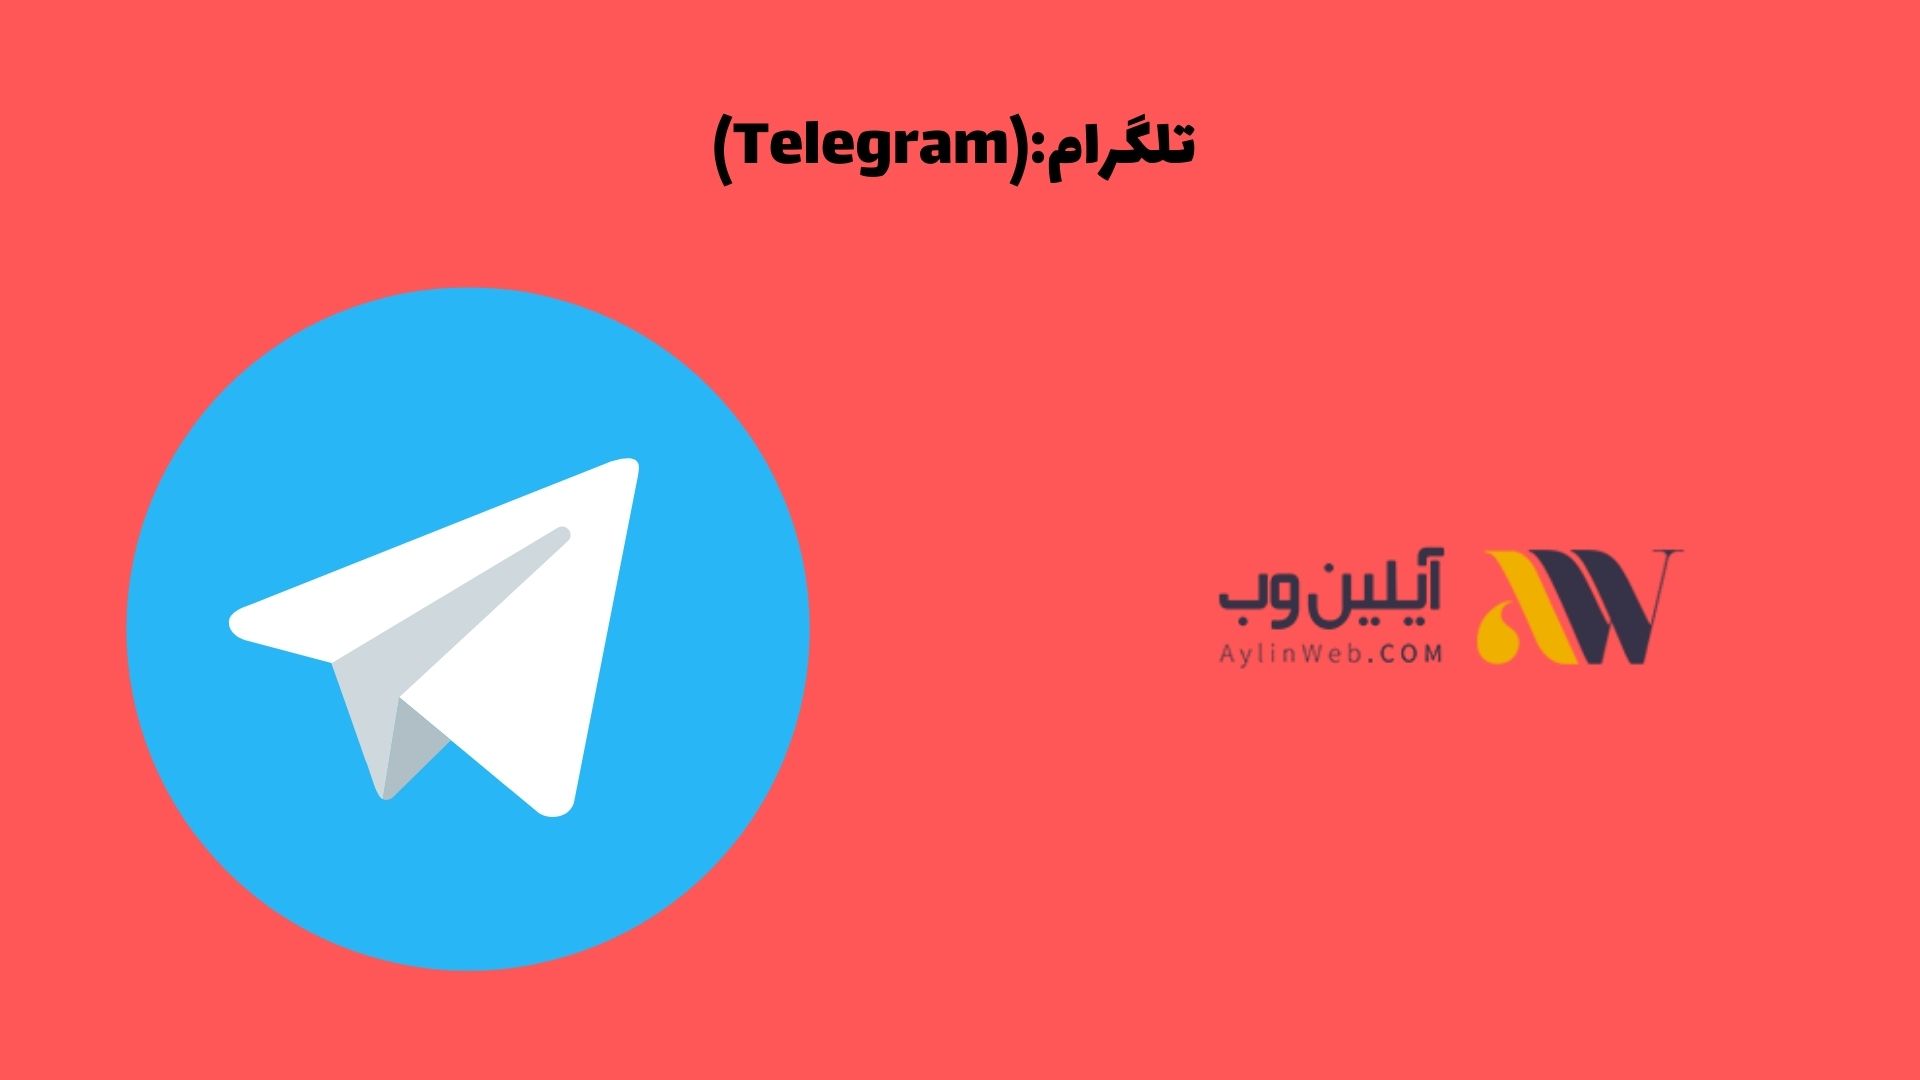 تلگرام (Telegram):